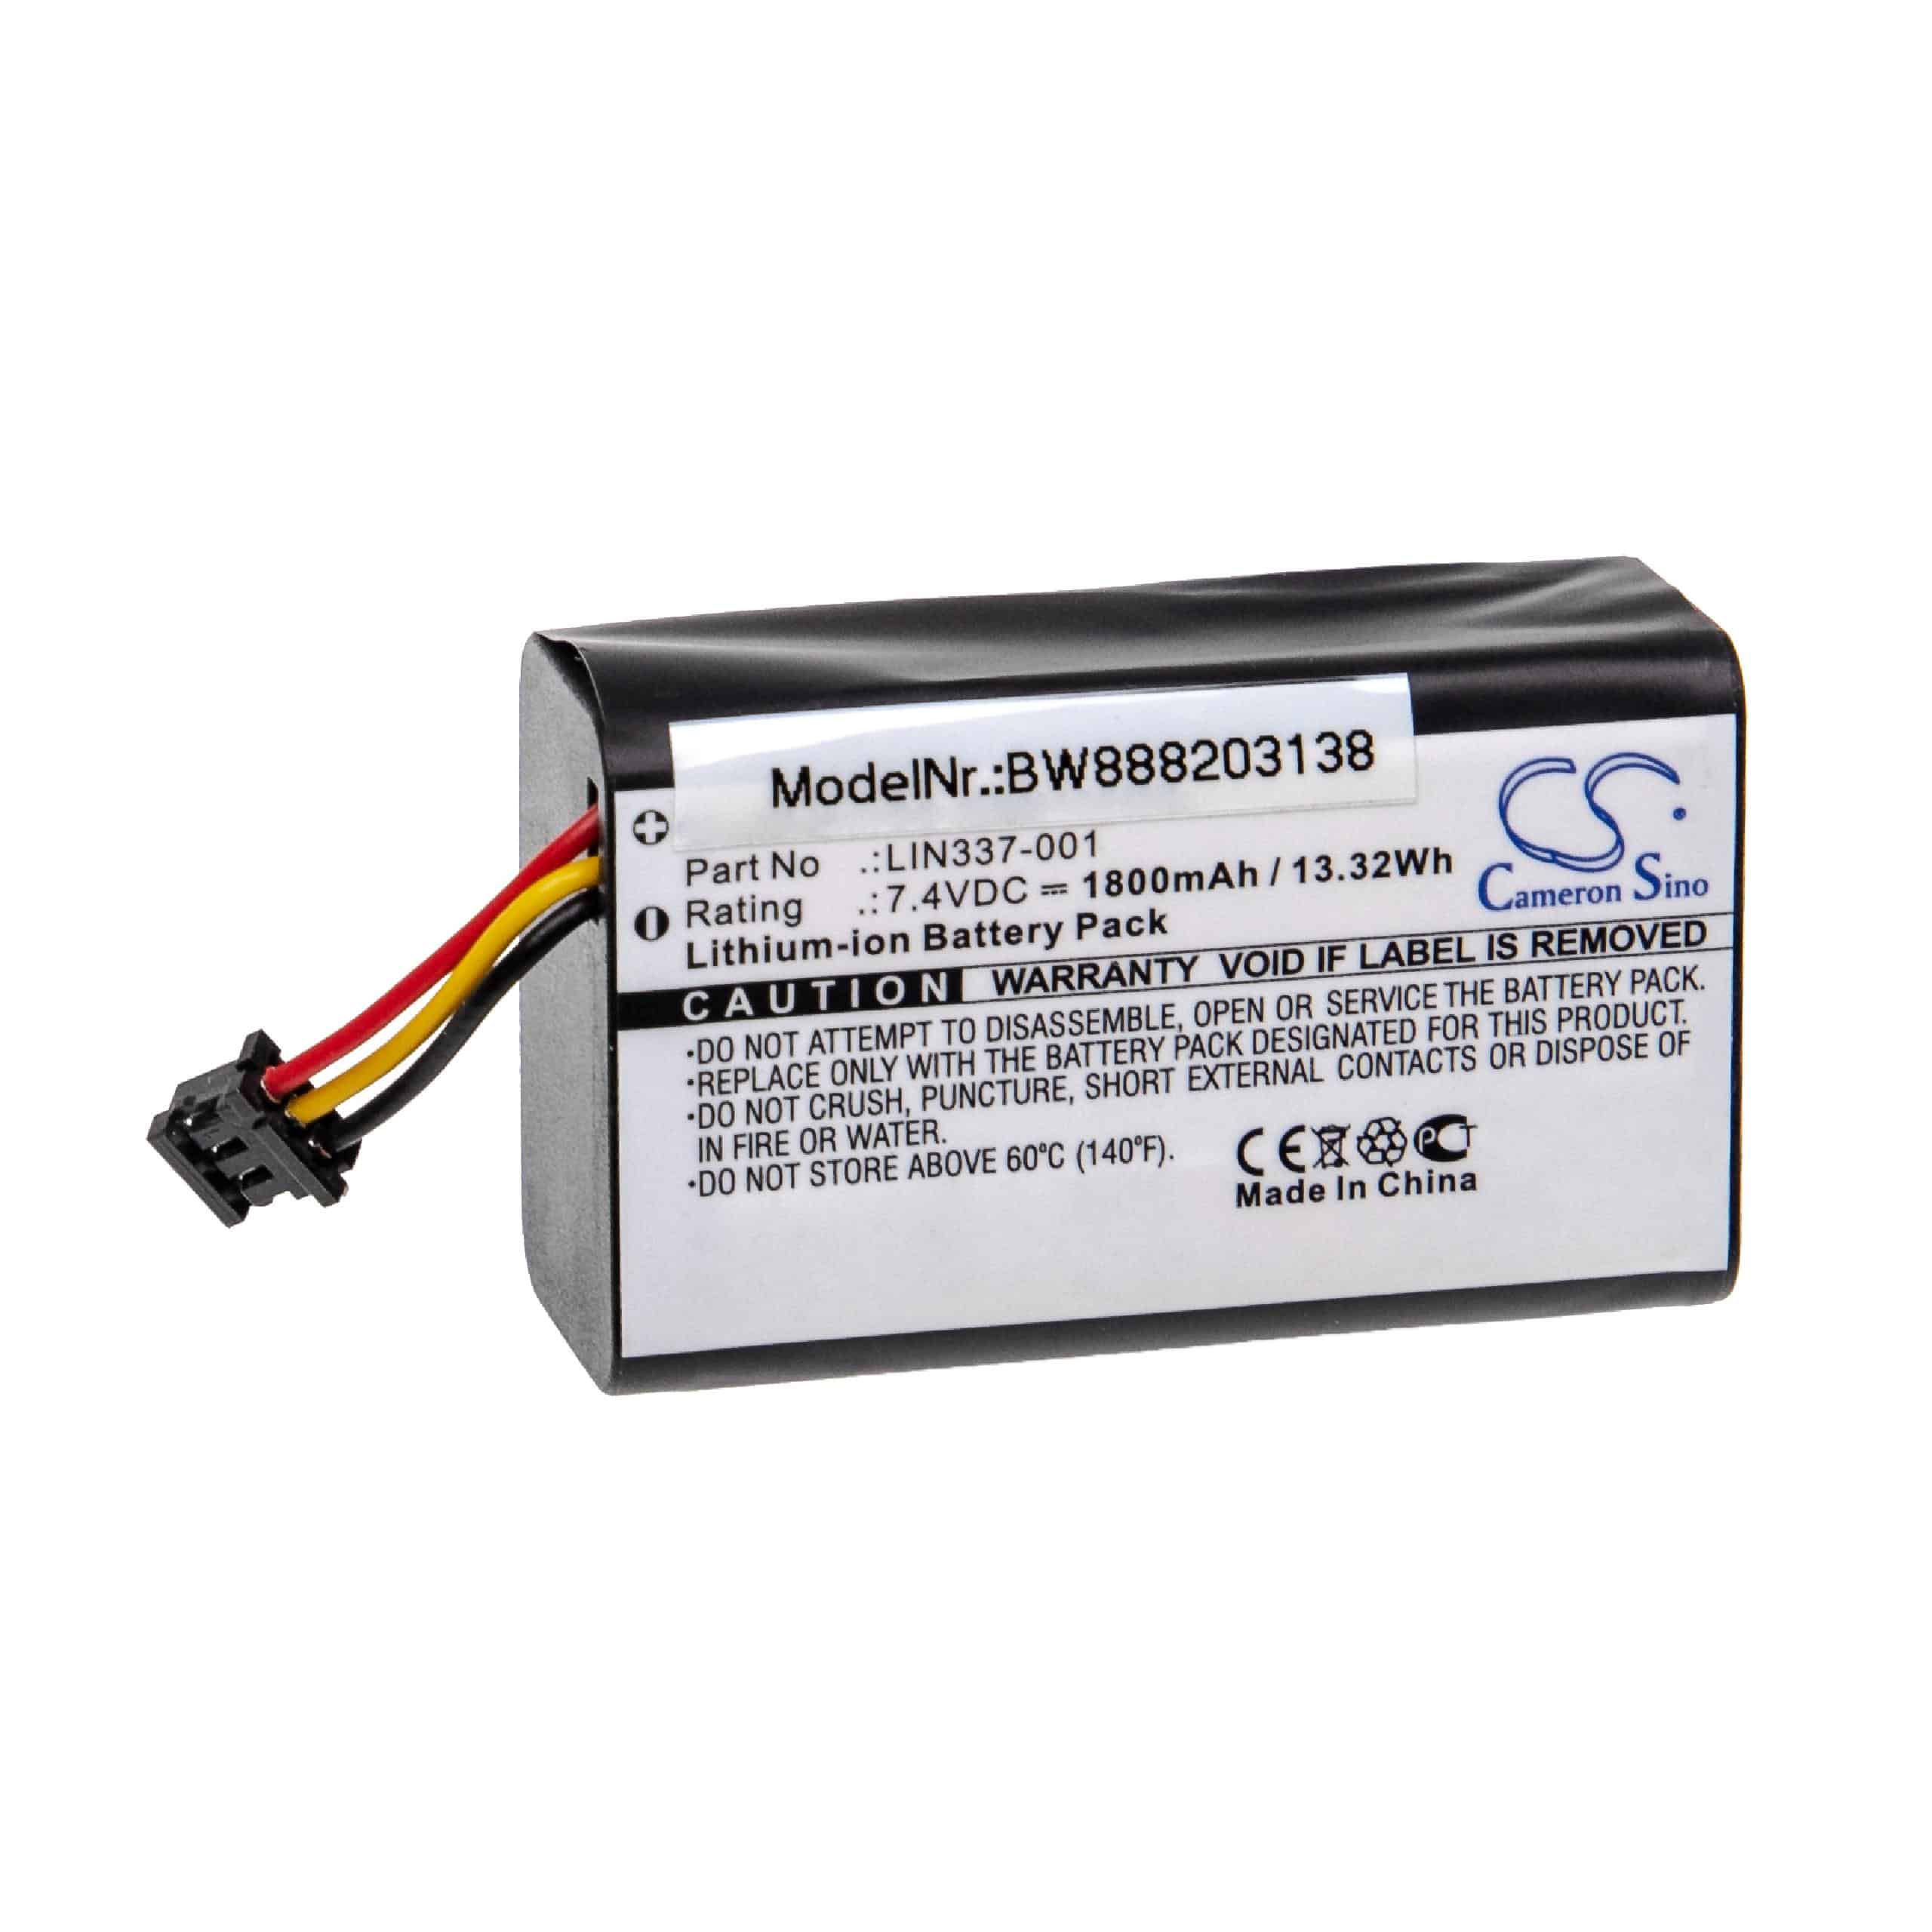 Batterie remplace QCore LIN337-001, 05020-160-0001-BAT pour appareil médical - 1800mAh 7,4V Li-ion